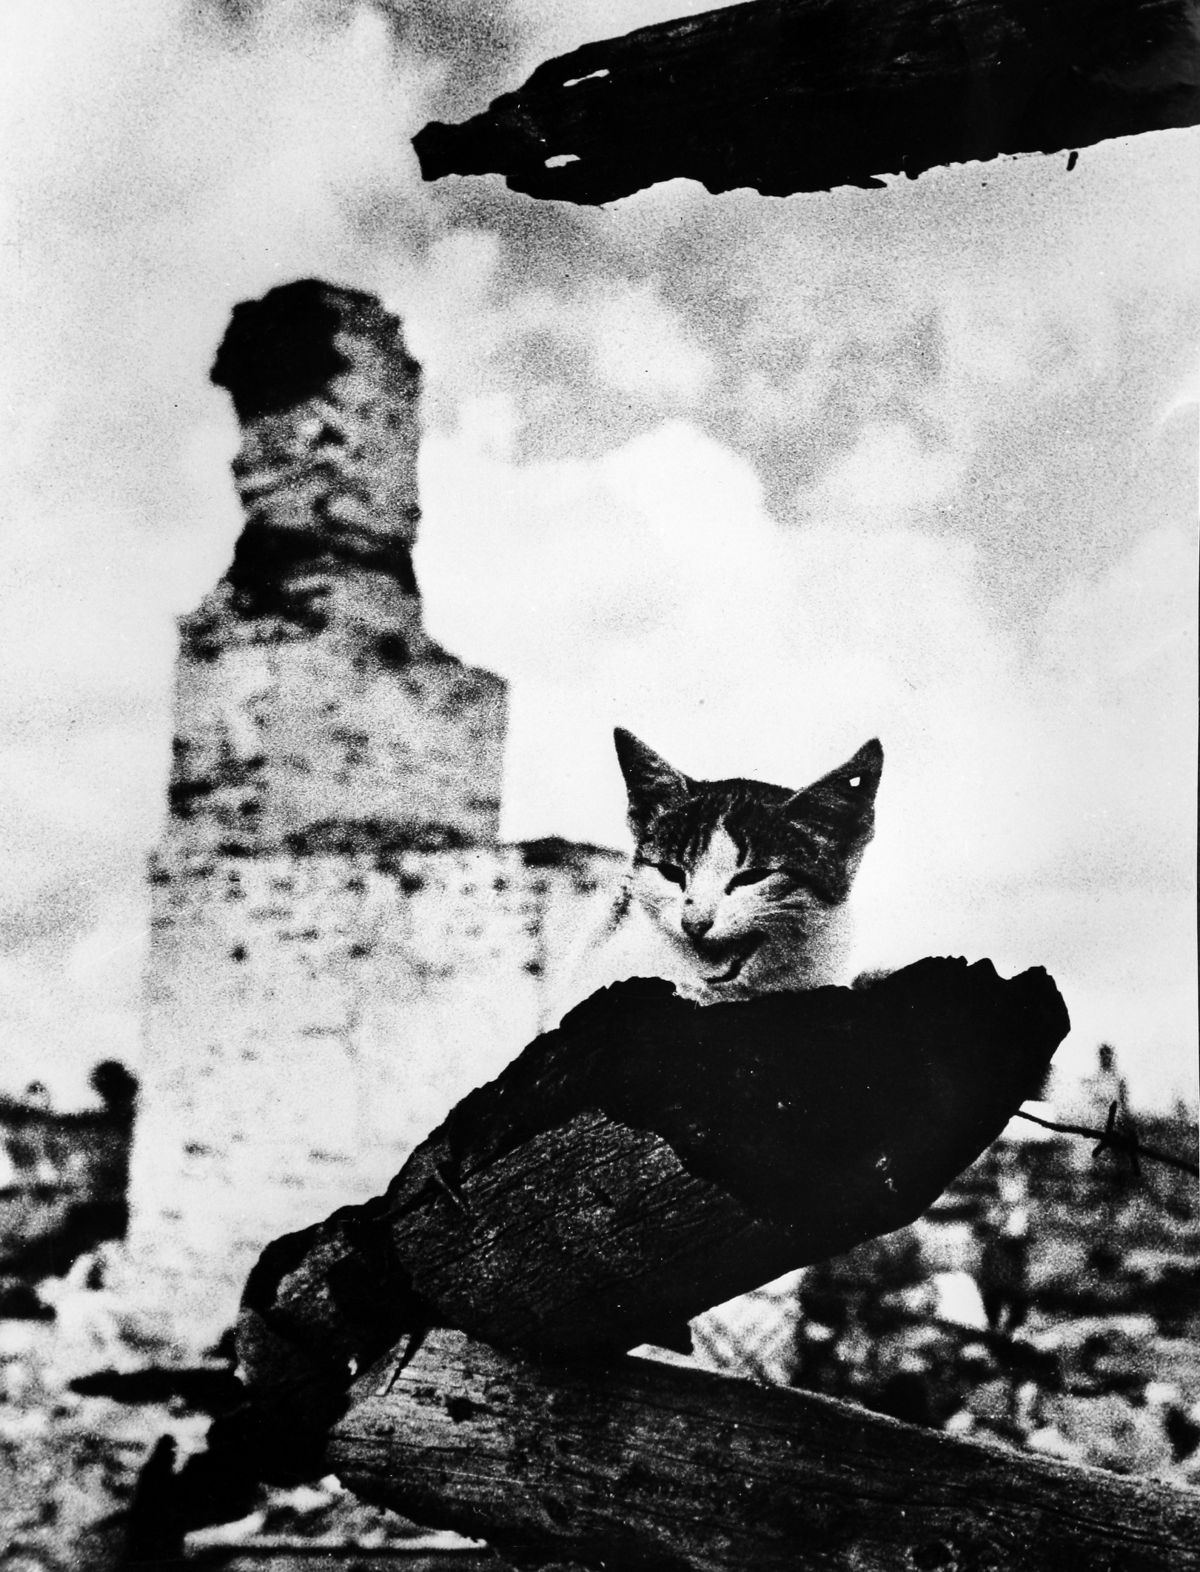 The Black Cat [1941]